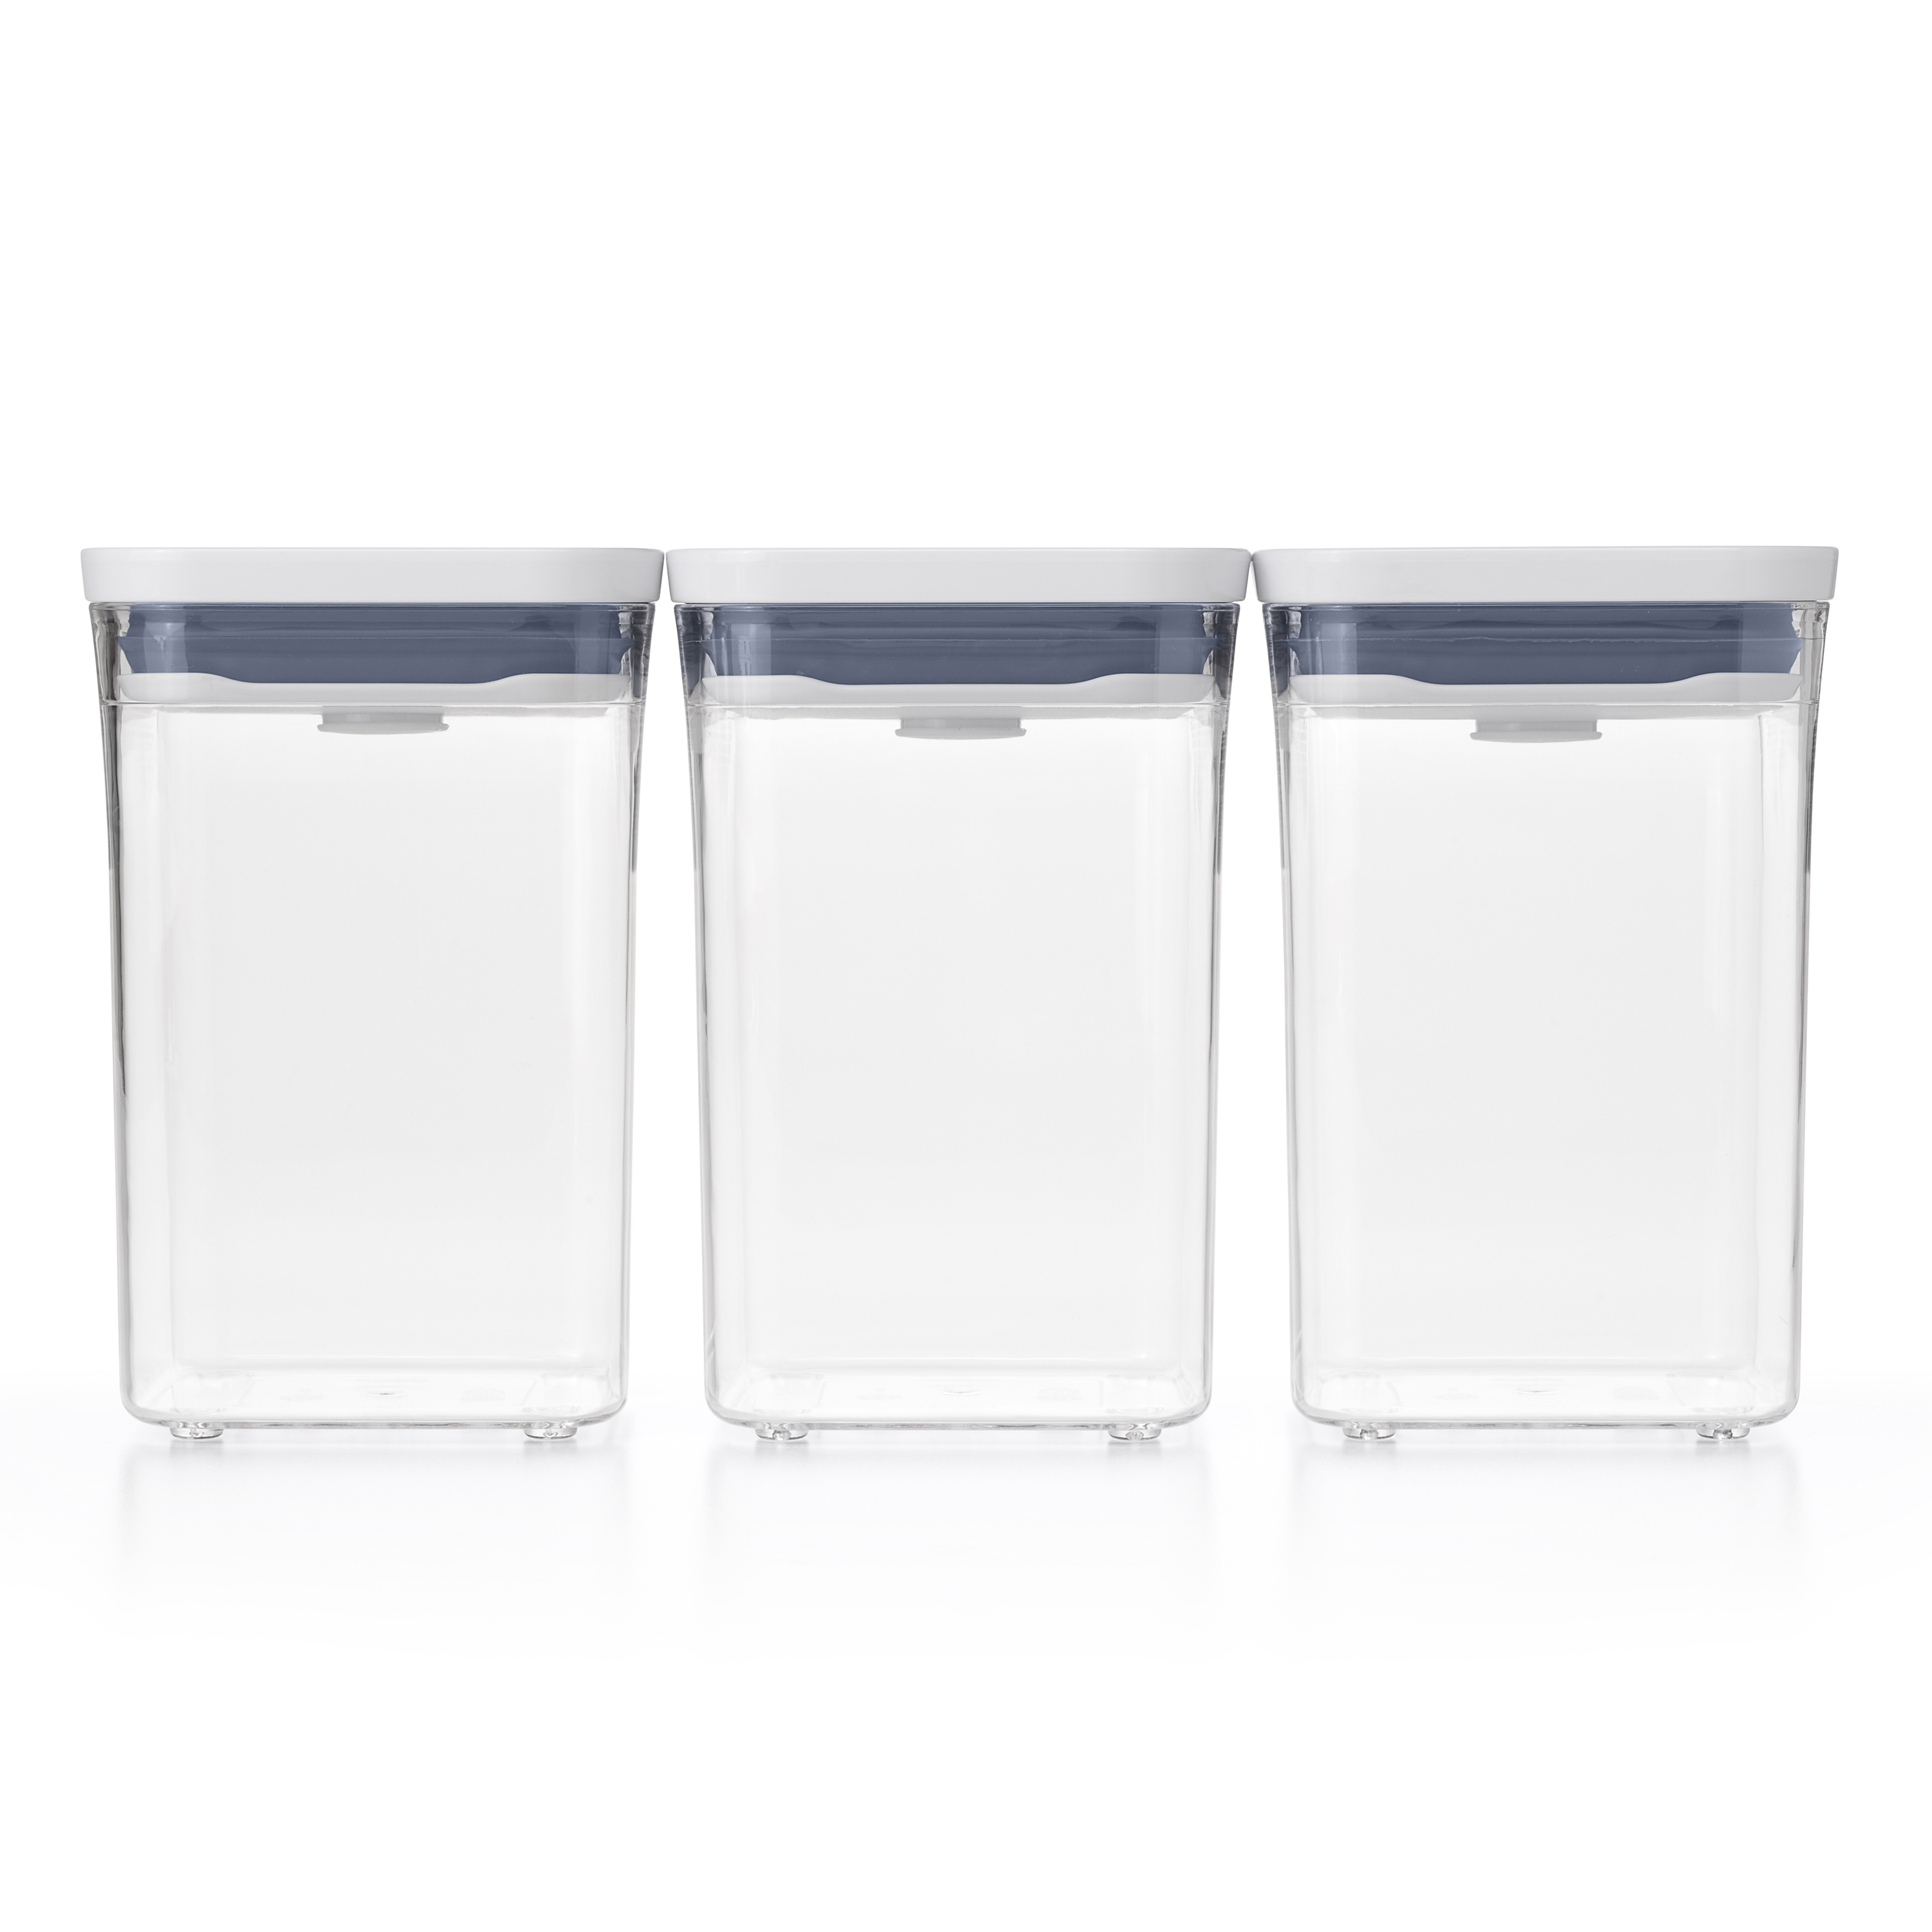 Paket] OXO Good Grips mehrteiliges Pop-Container-Set, Kunststoff, weiß |  WEIBO Manufakturen - Hochwertige Geschenke in stilvollem Design